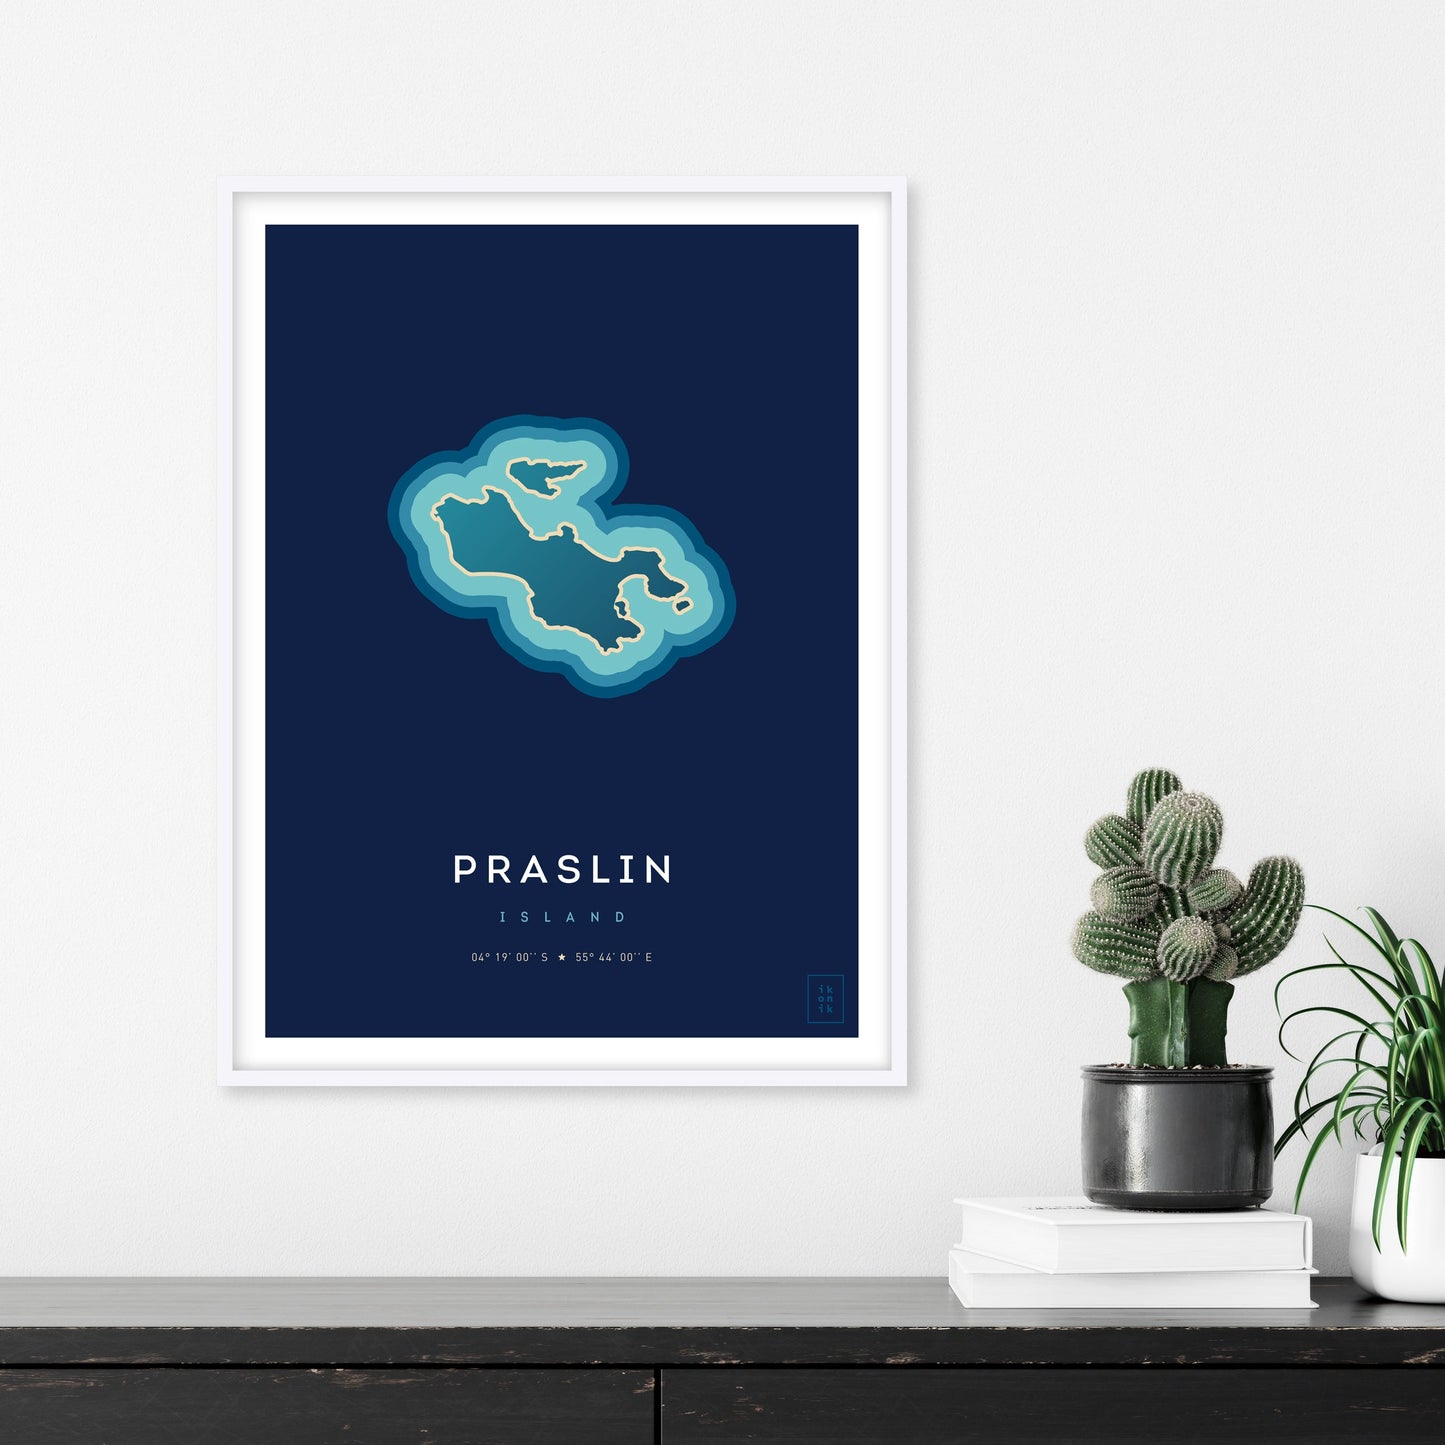 Affiche de l'île de Praslin